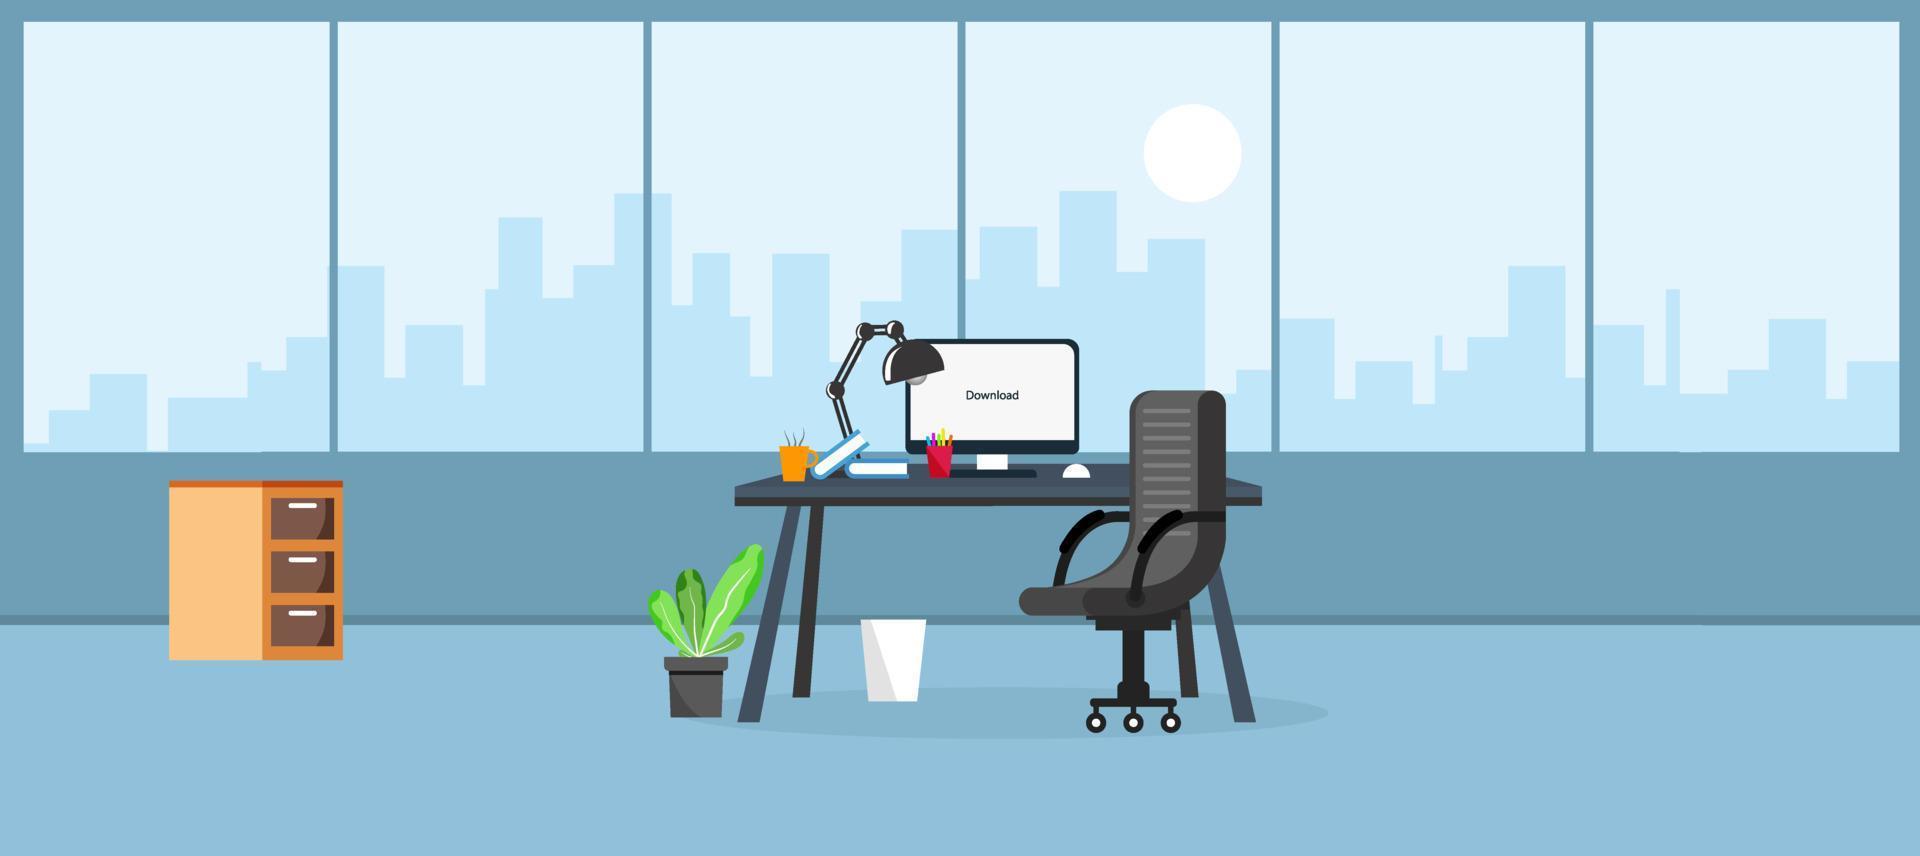 leren en onderwijzen zakelijk kantoor om te werken modern interieur, kantoorkast met computer kleurrijke vectorillustratie in platte cartoon stijl vector design